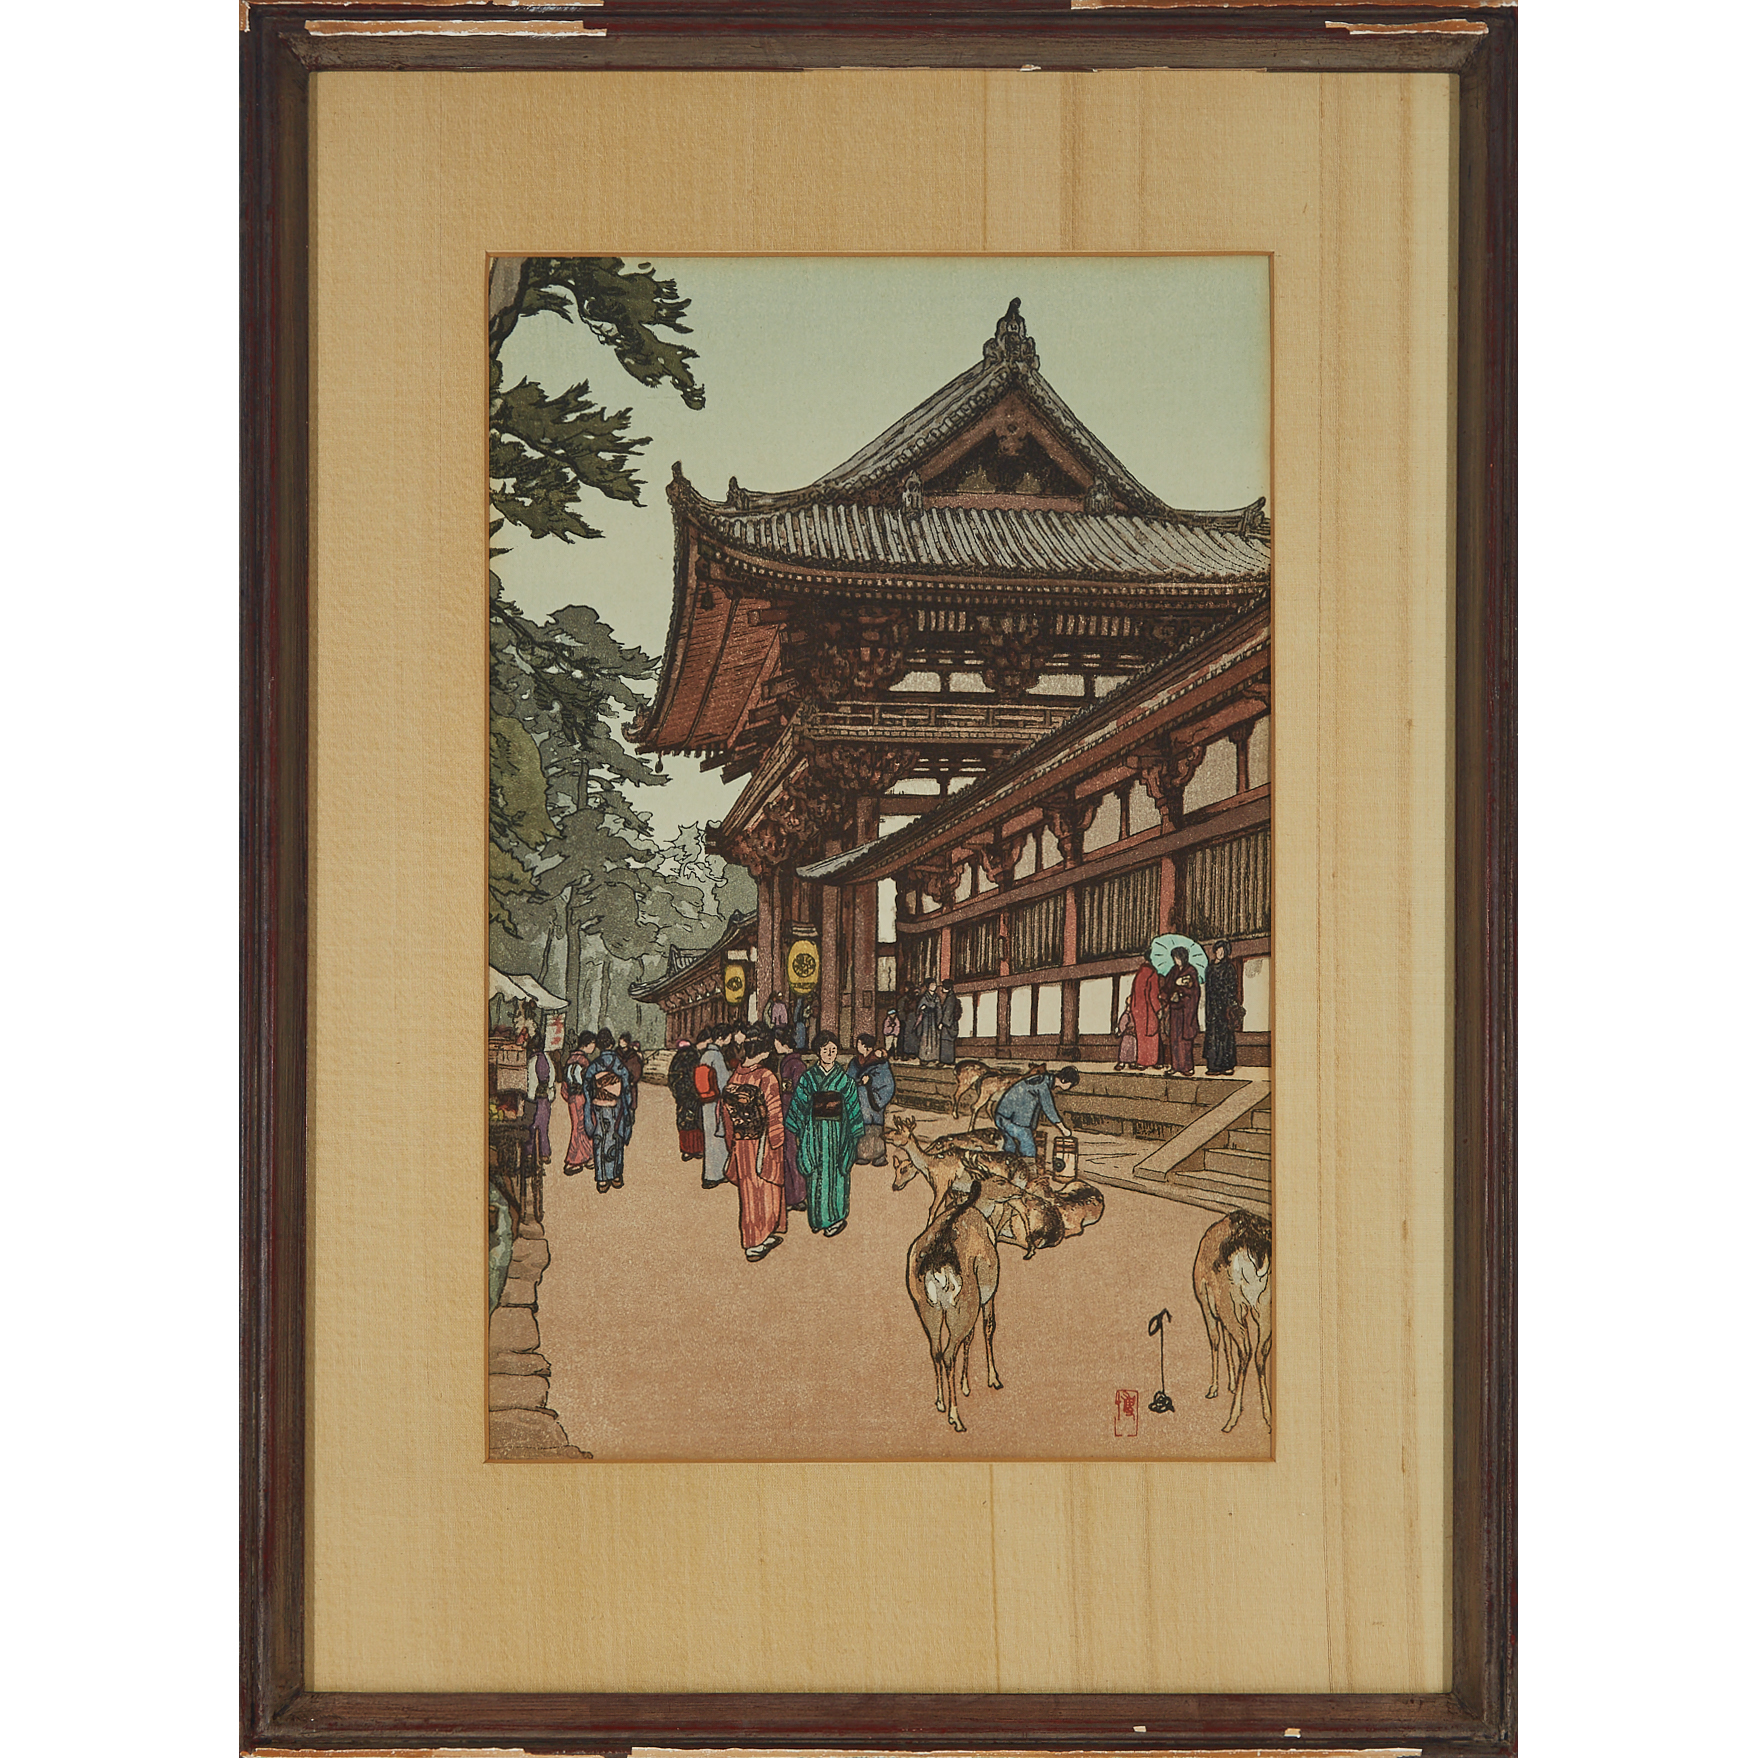 Hiroshi Yoshida (1876-1950), Daibutsu Temple Gate